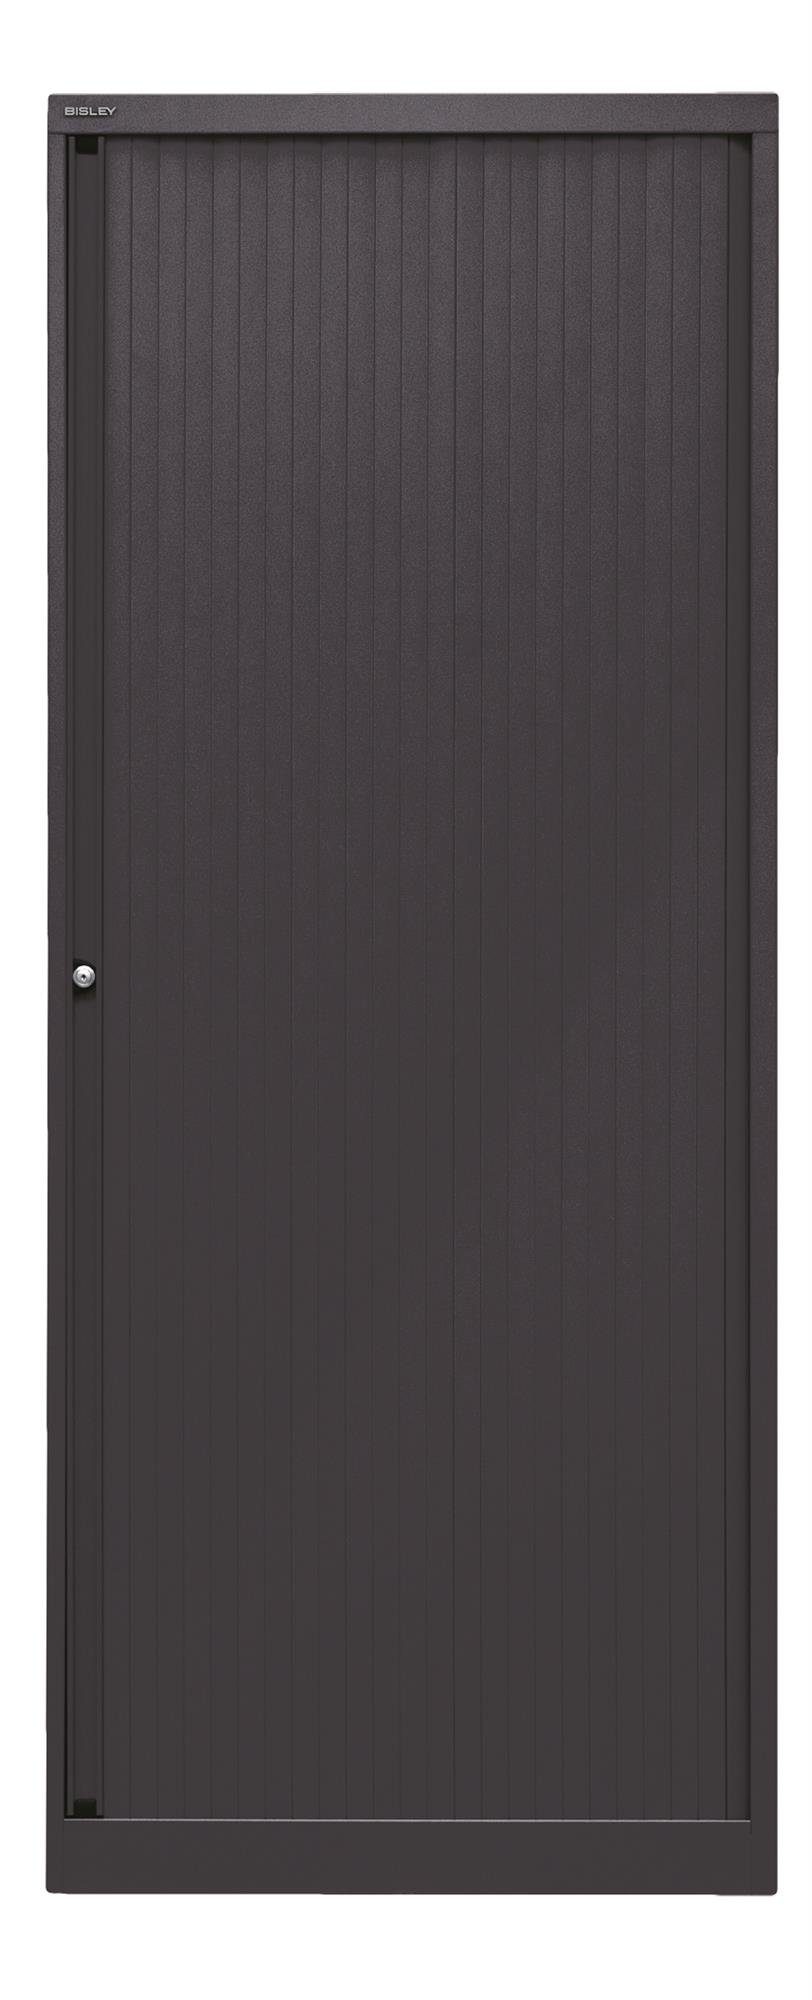 Rollladenschrank Korpus EUROTAMBOUR schwarz, Bisley 5633 schwarz Rollladen